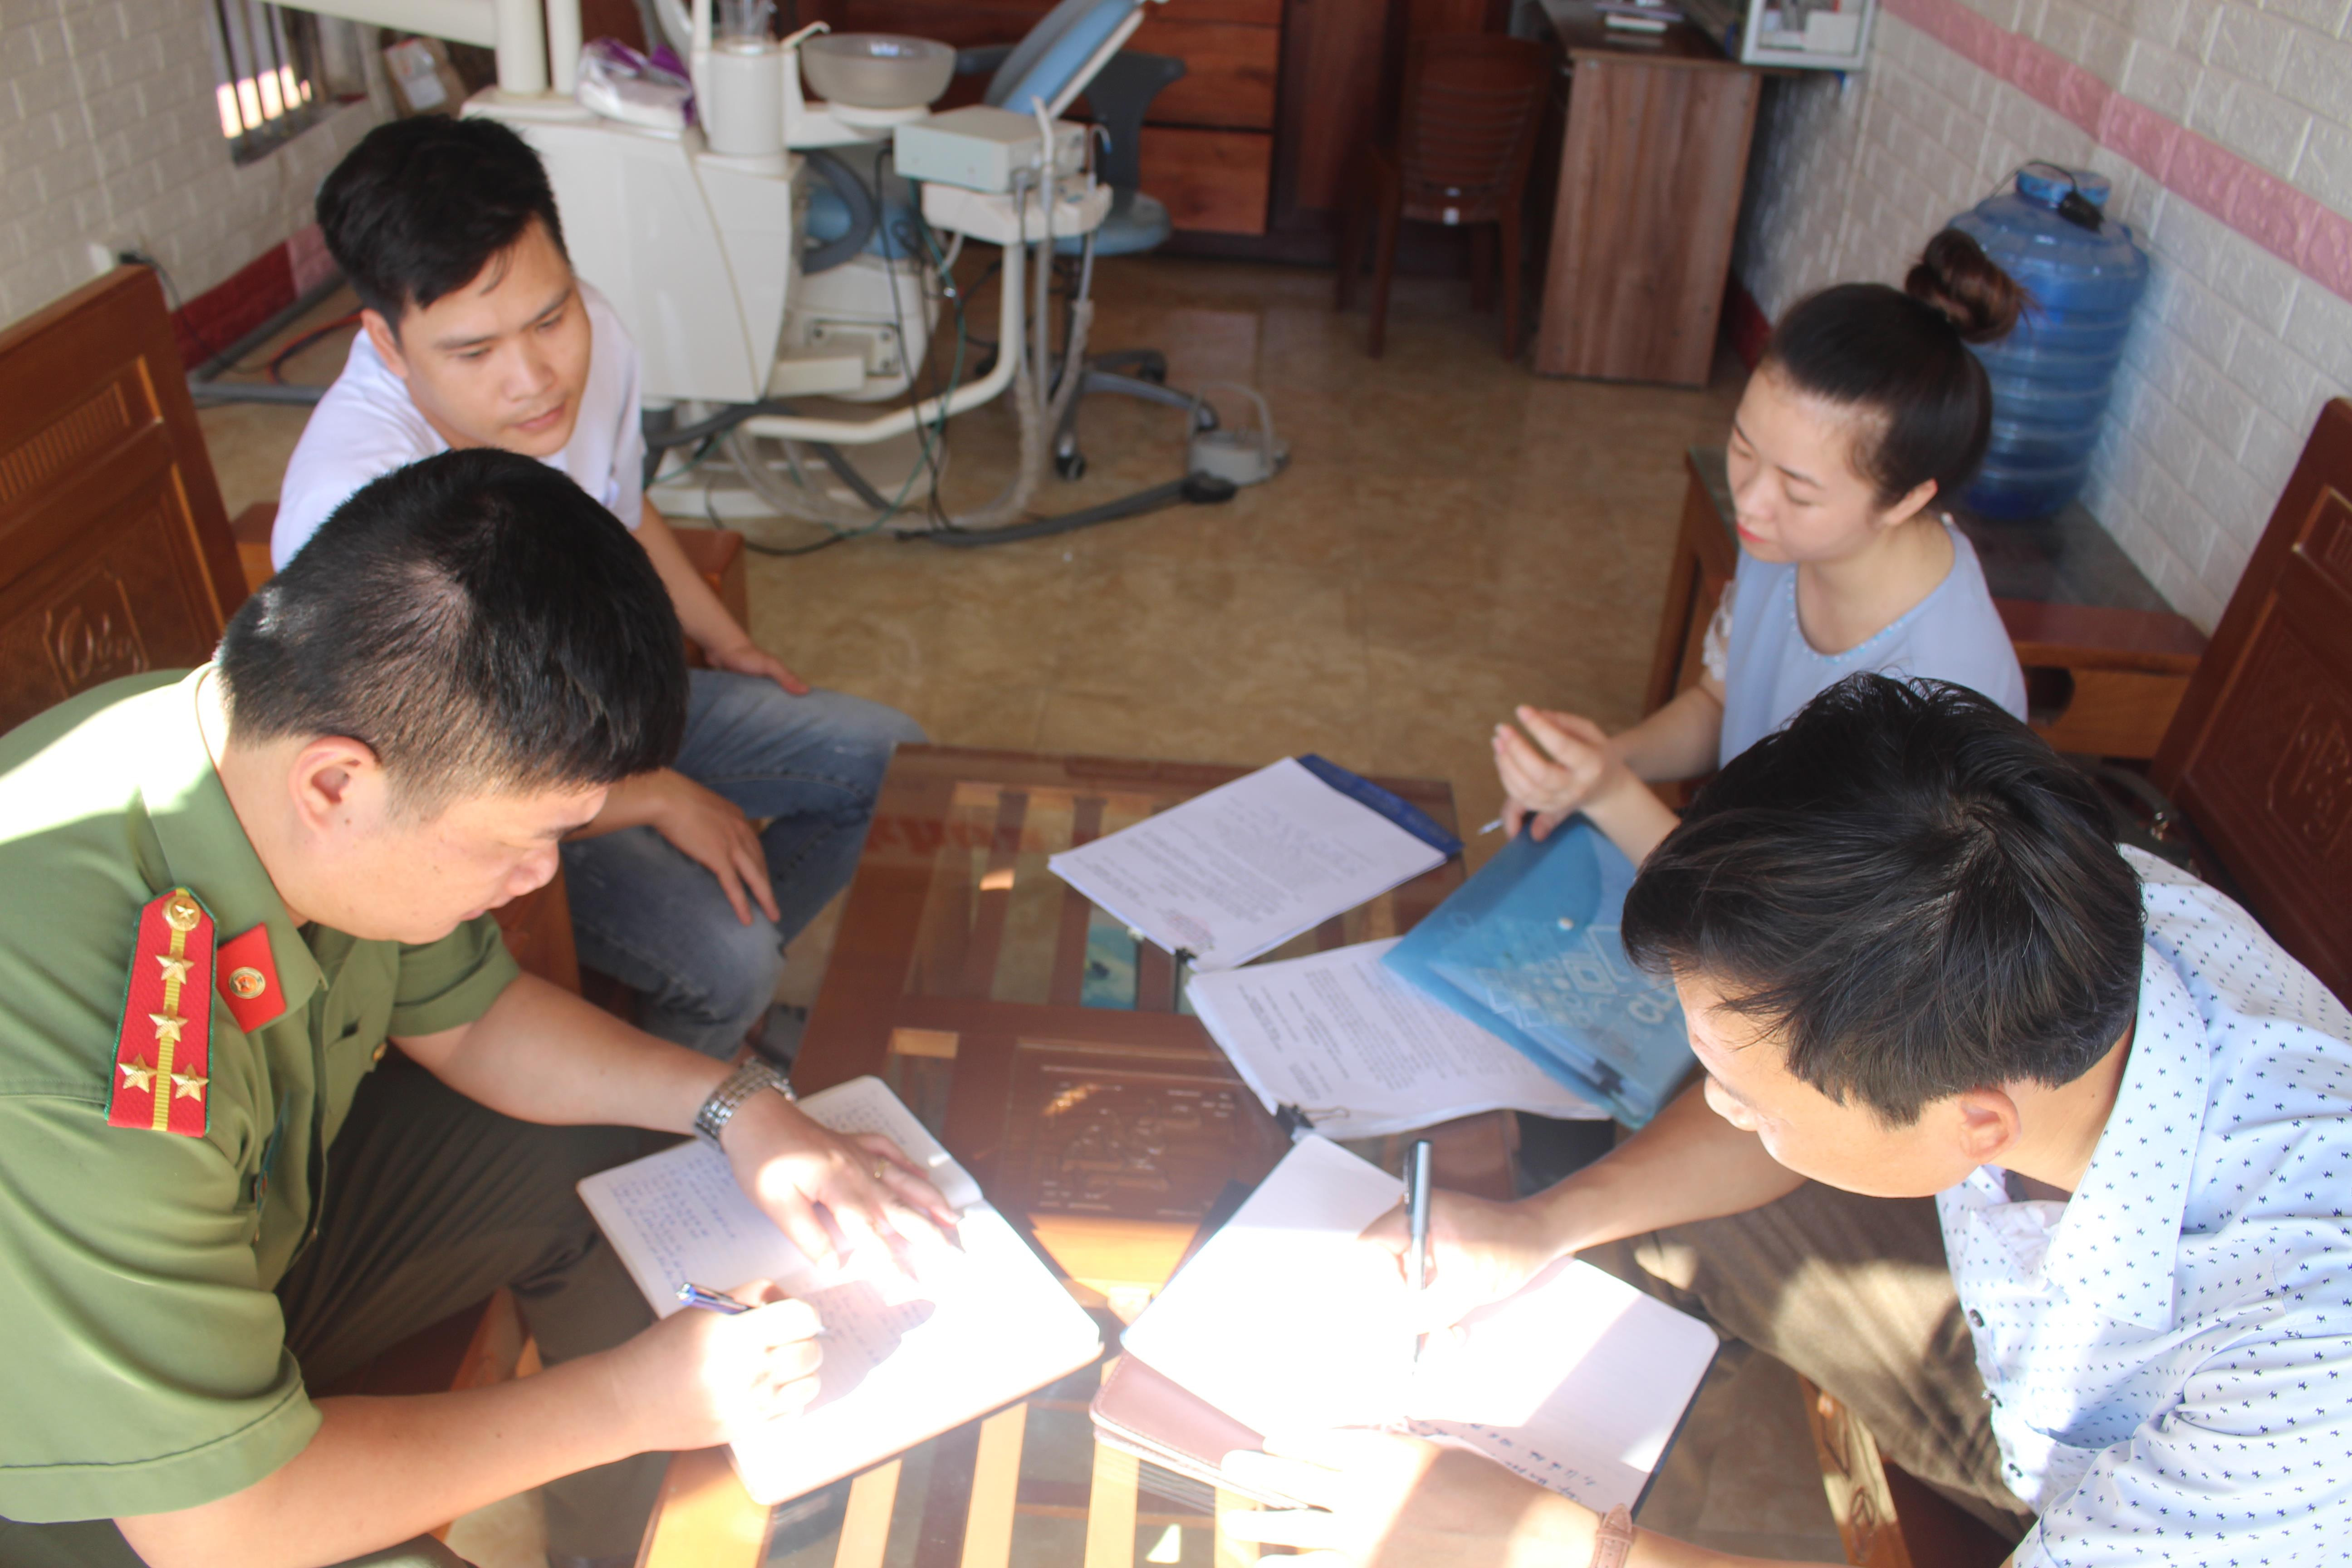 Đoàn đến kiểm tra phòng khám nha khoa Huy Hoàn của anh Lê Huy Hoàn ở thôn Trường Thịnh, xã Quỳnh Thuận